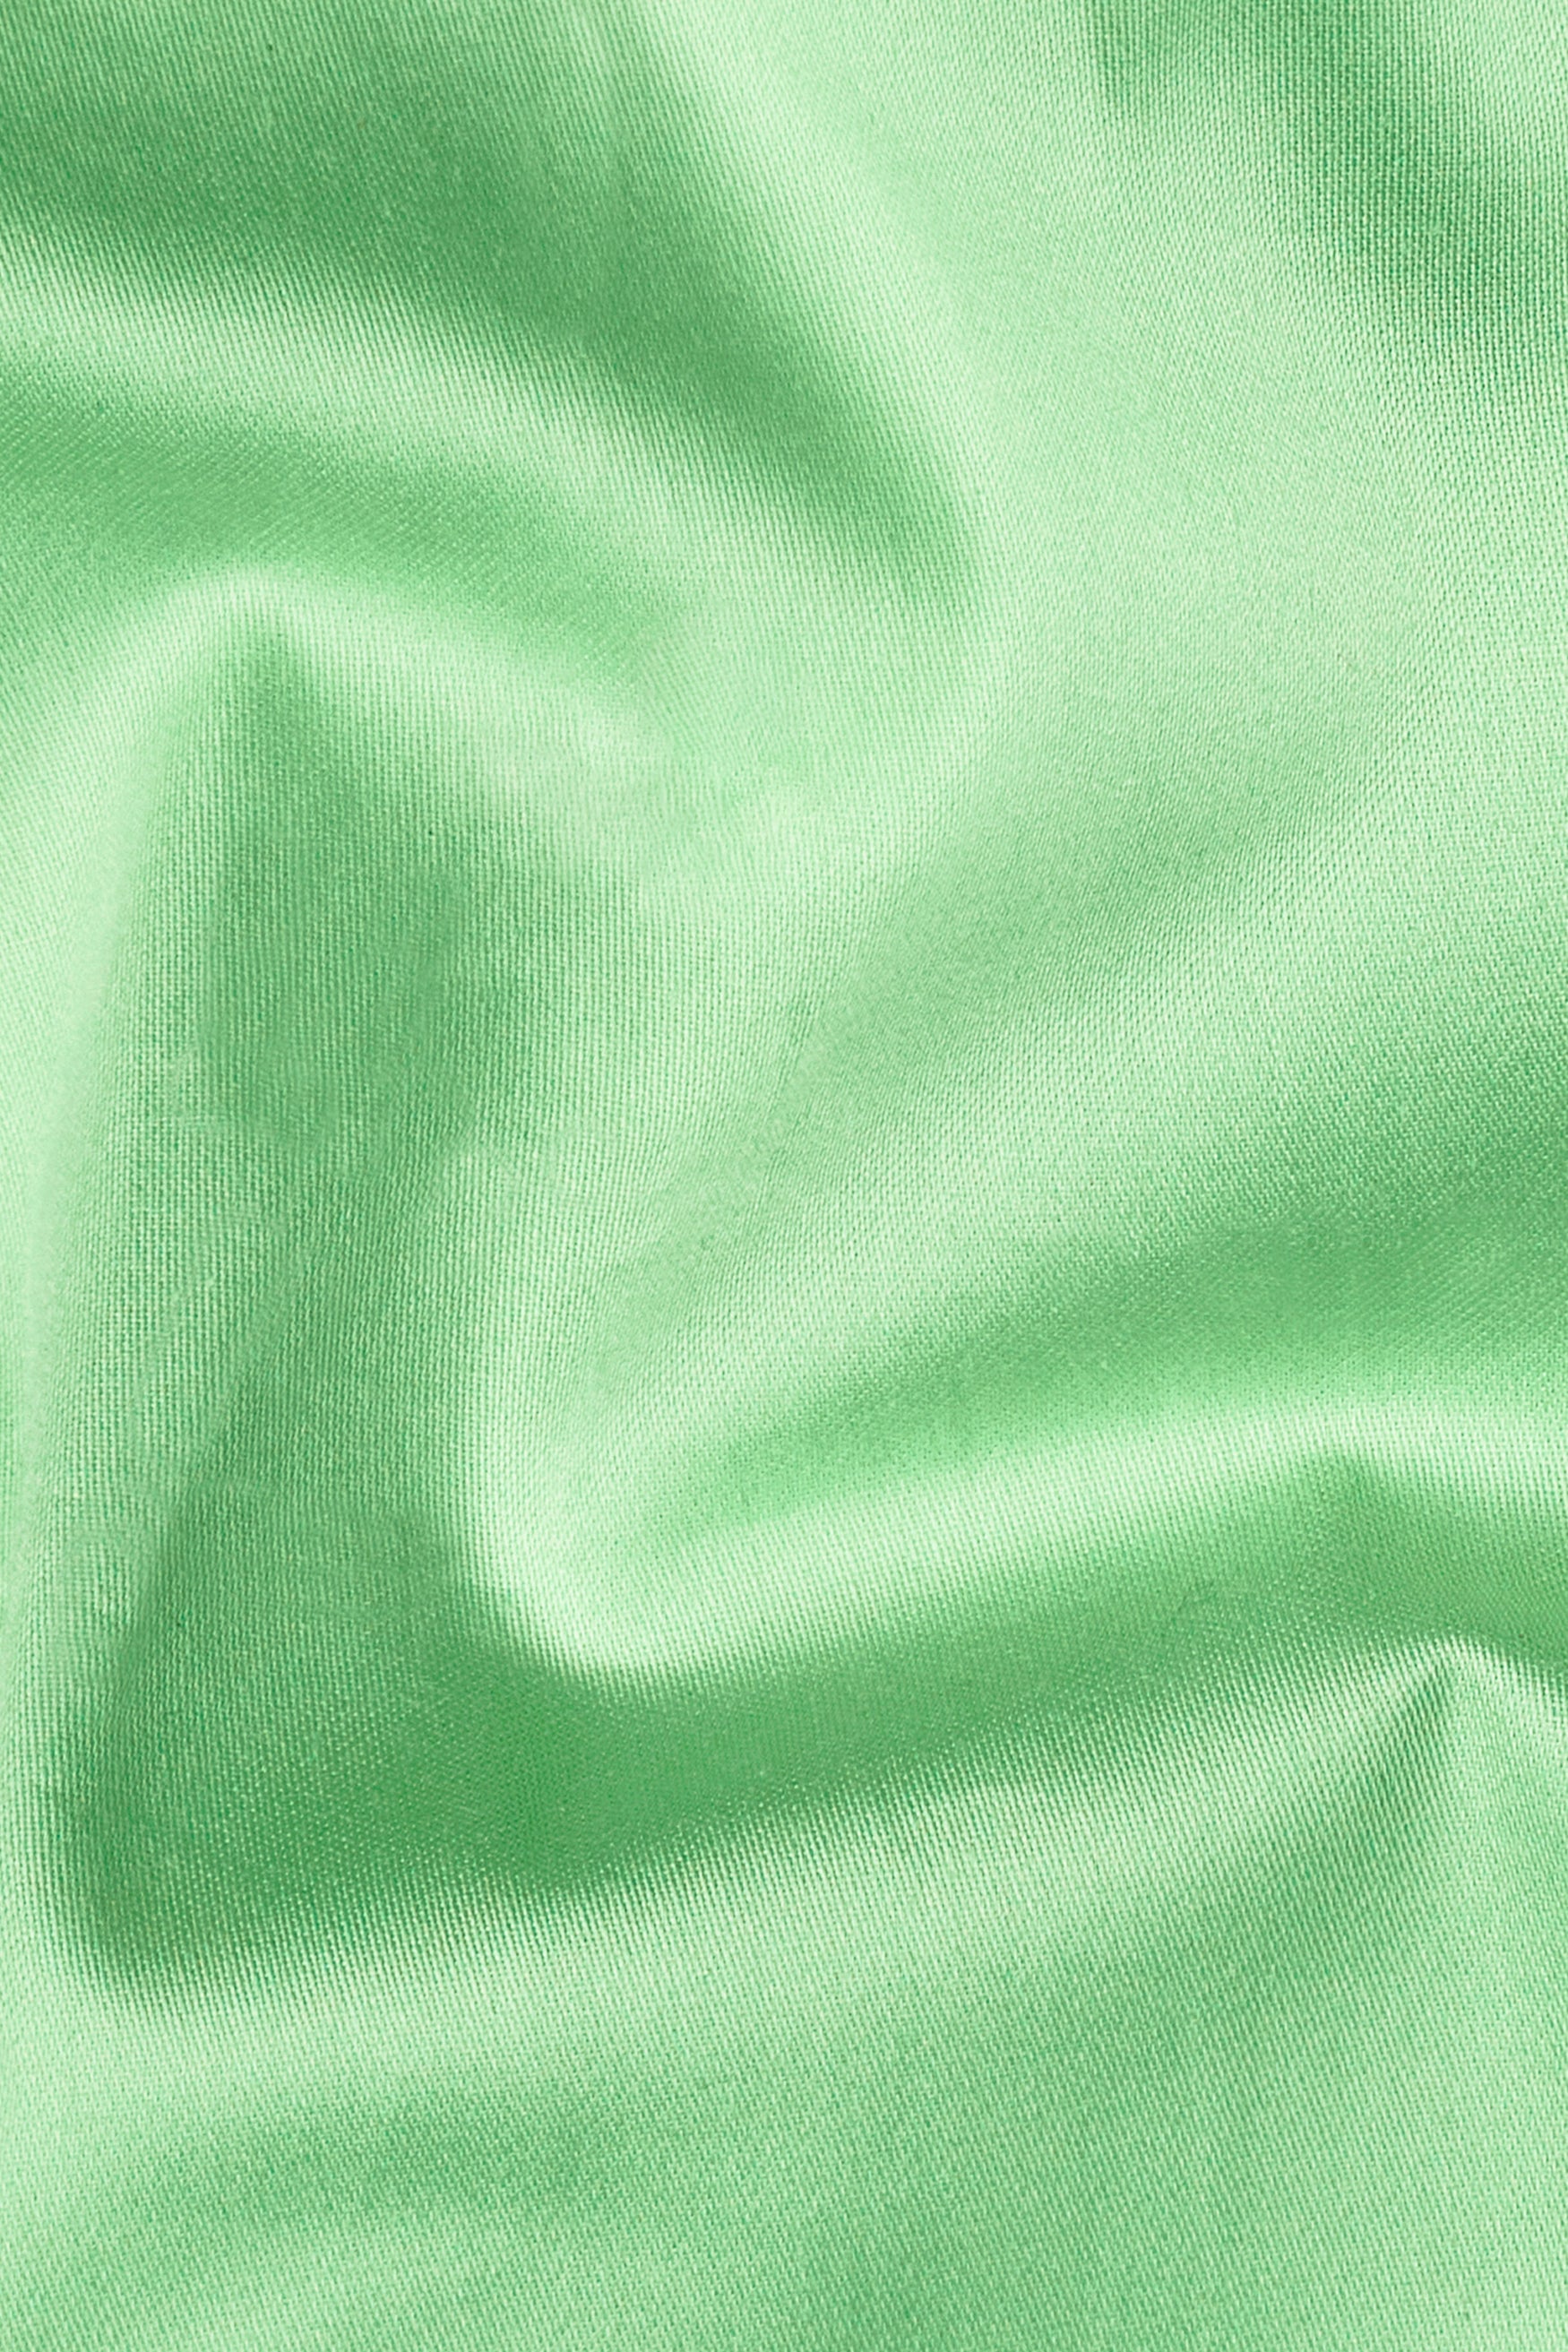 Celadon Green Subtle Sheen Super Soft Premium Cotton Pathani